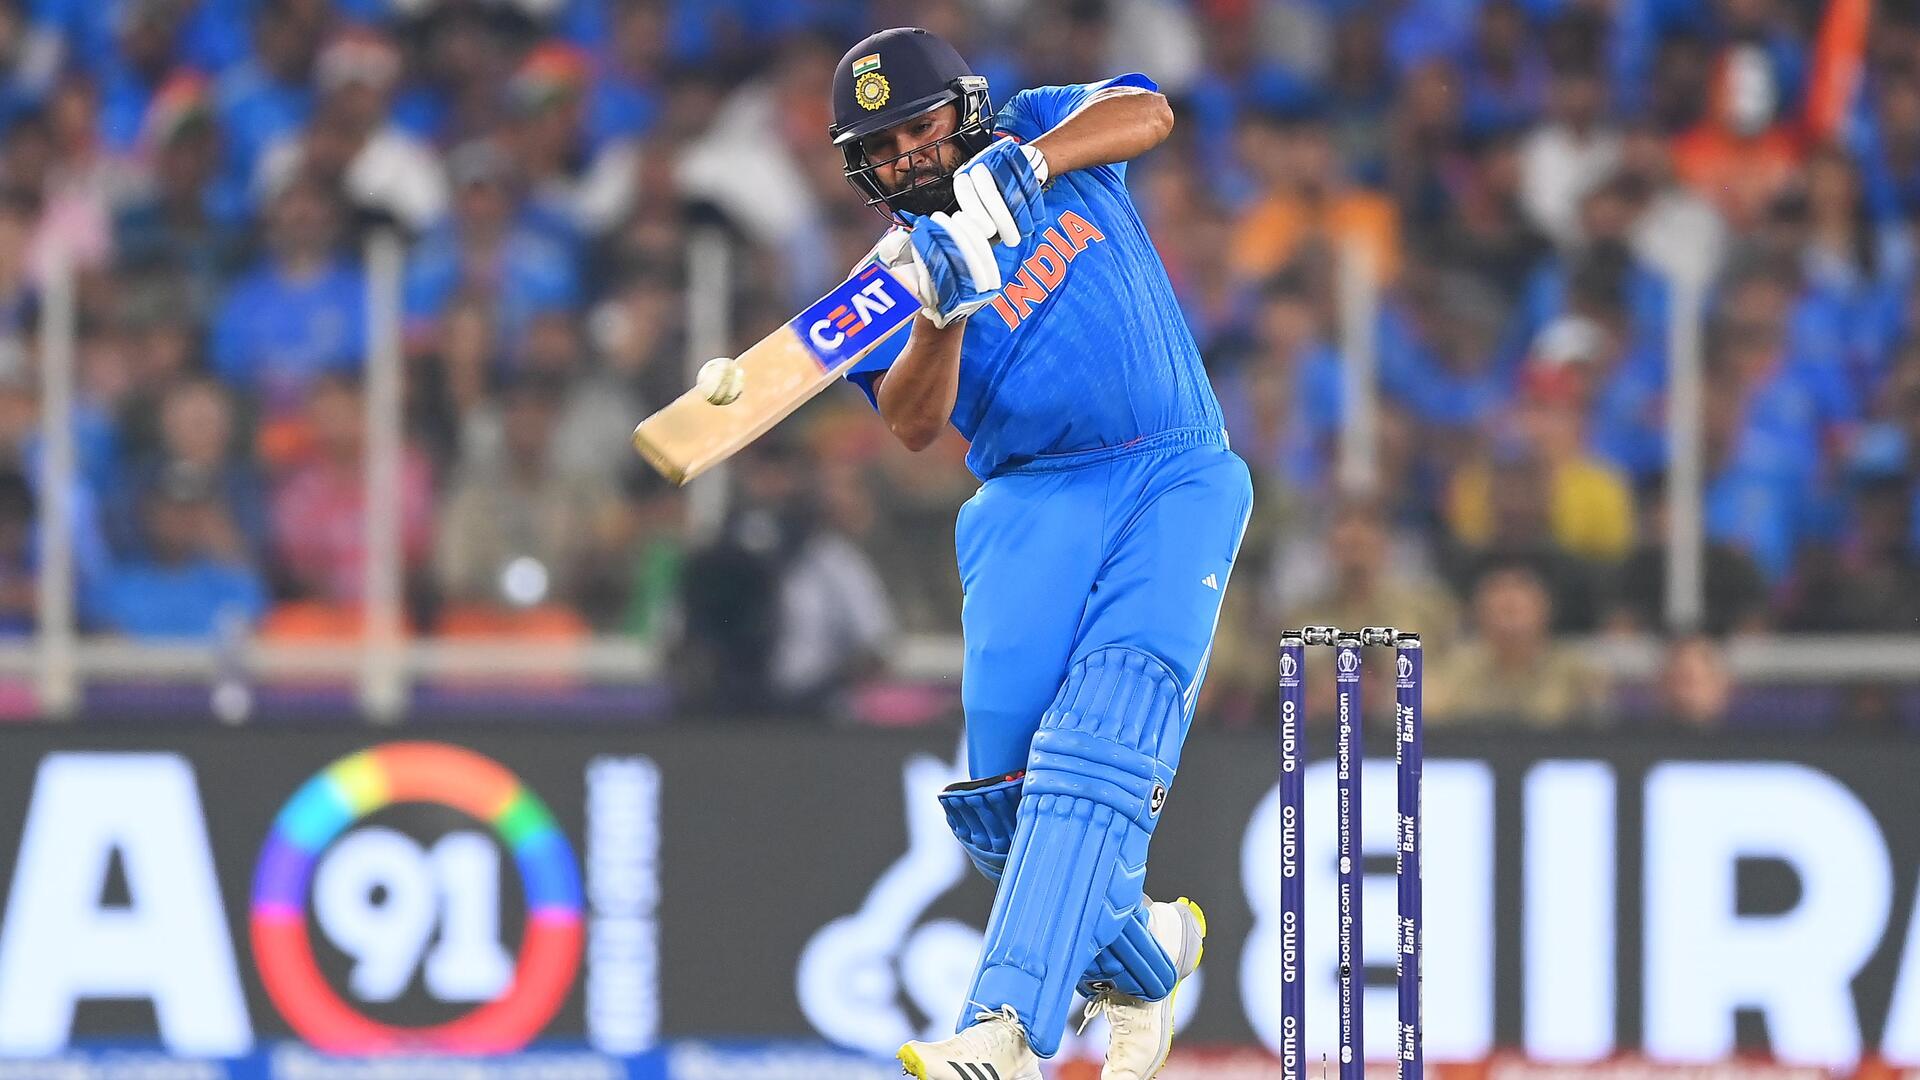 रोहित शर्मा वनडे में एक विपक्षी टीम के खिलाफ सर्वाधिक छक्के जड़ने वाले बल्लेबाज बने